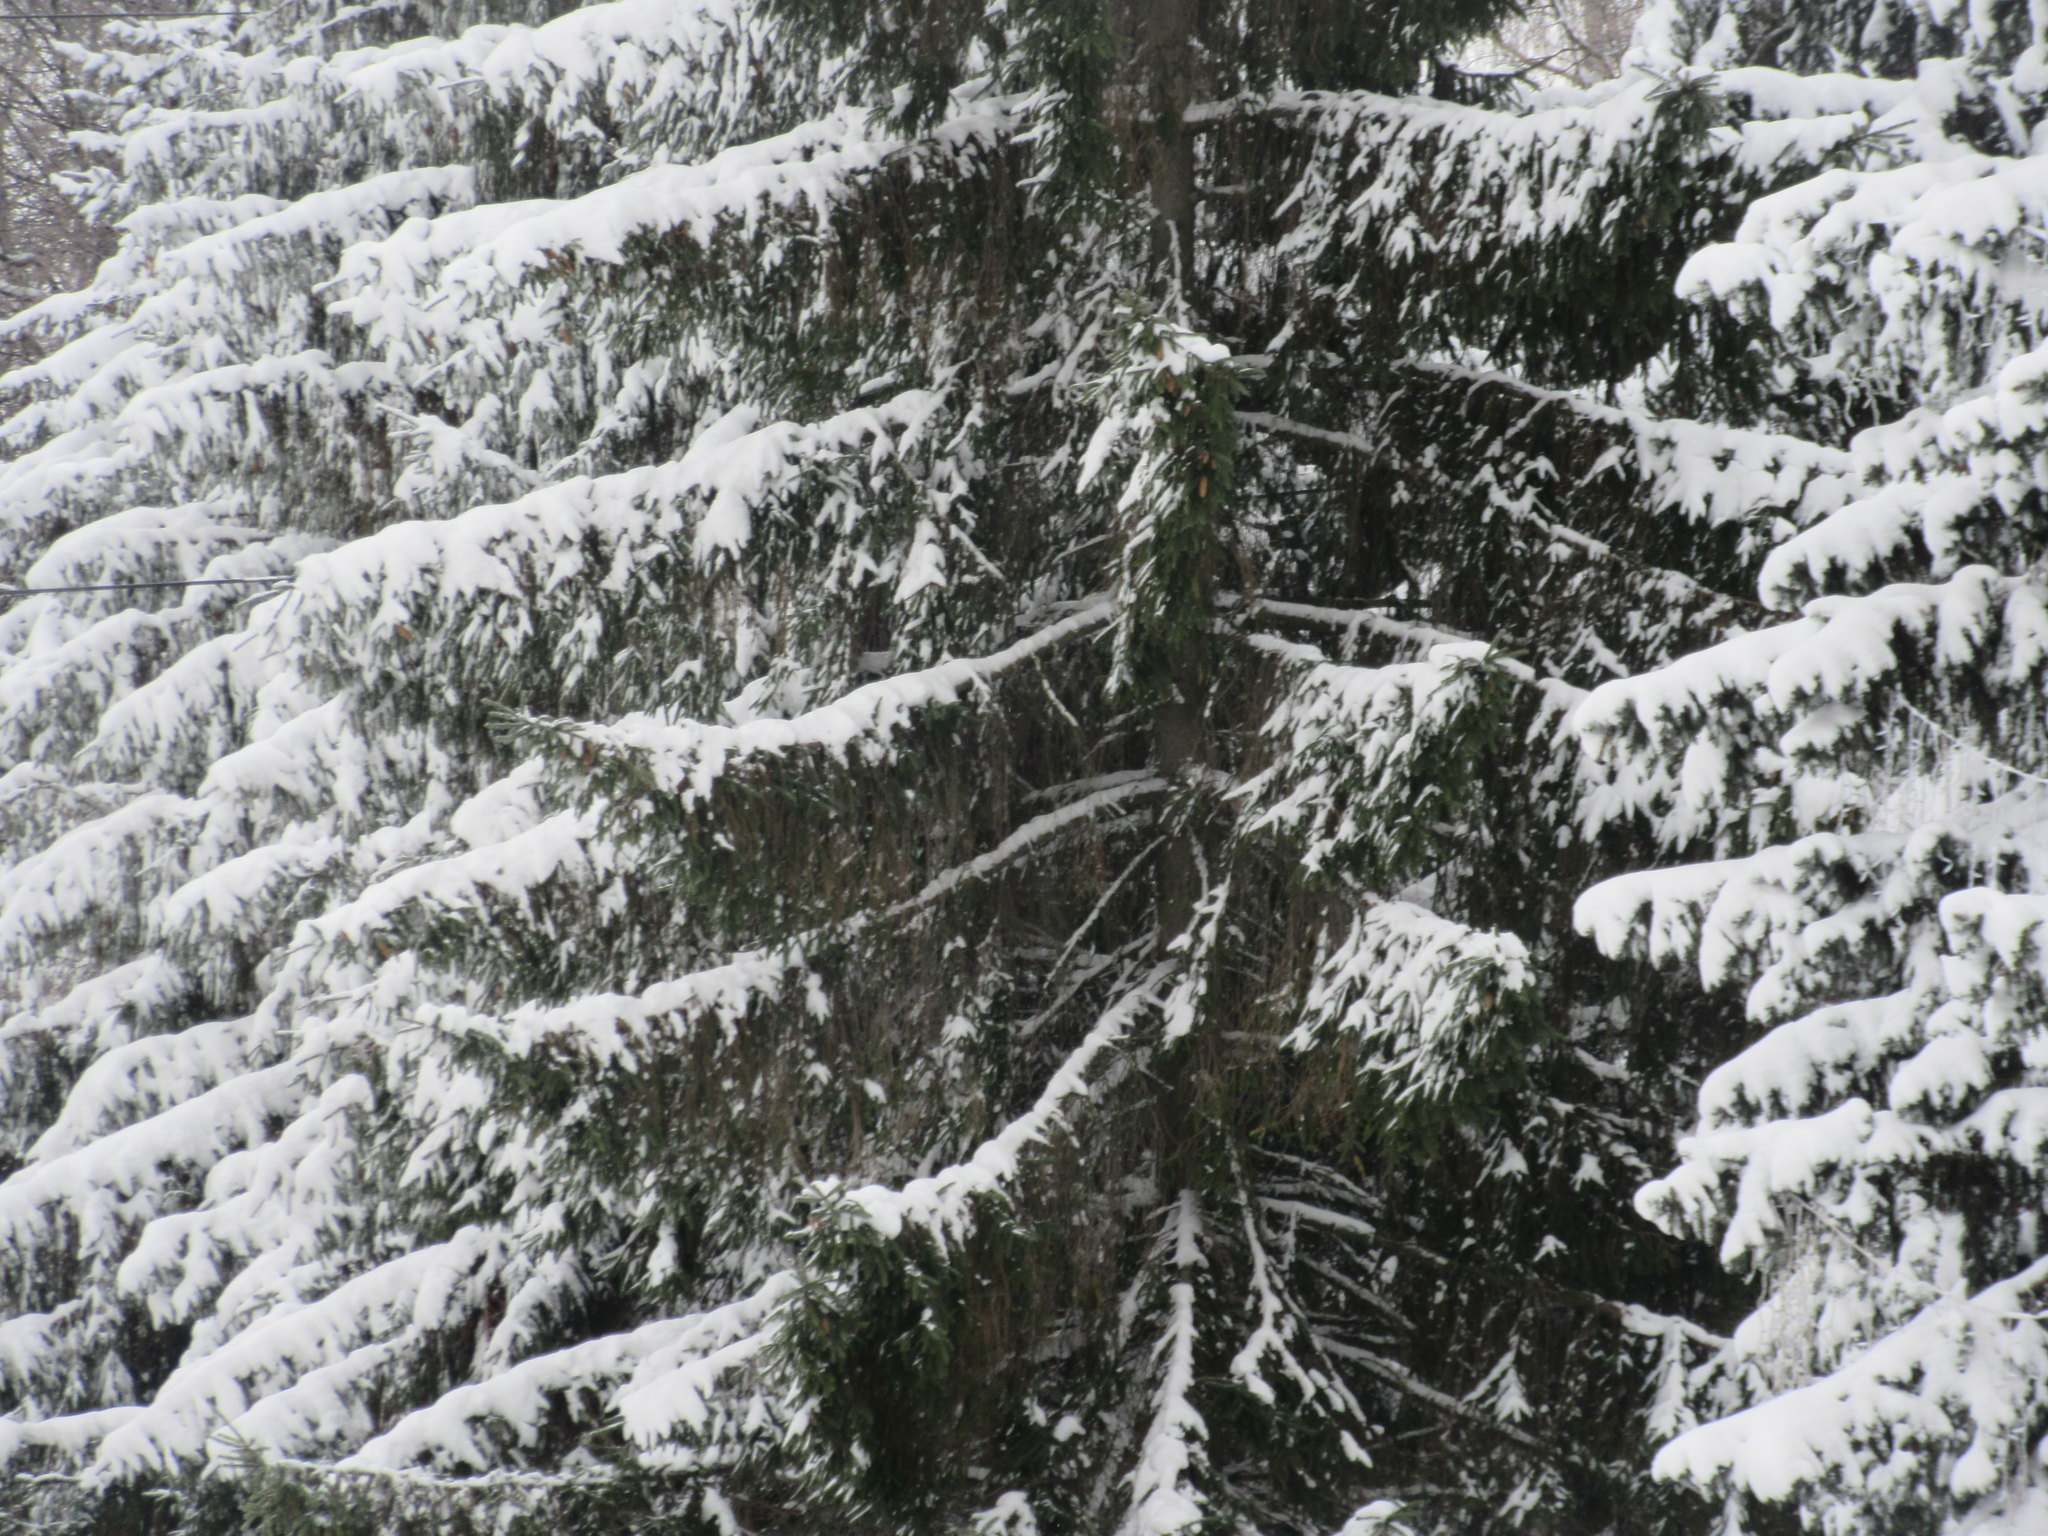 Текст сияет снег слепит глаза деревья. Какое блаженство что блещут снега.